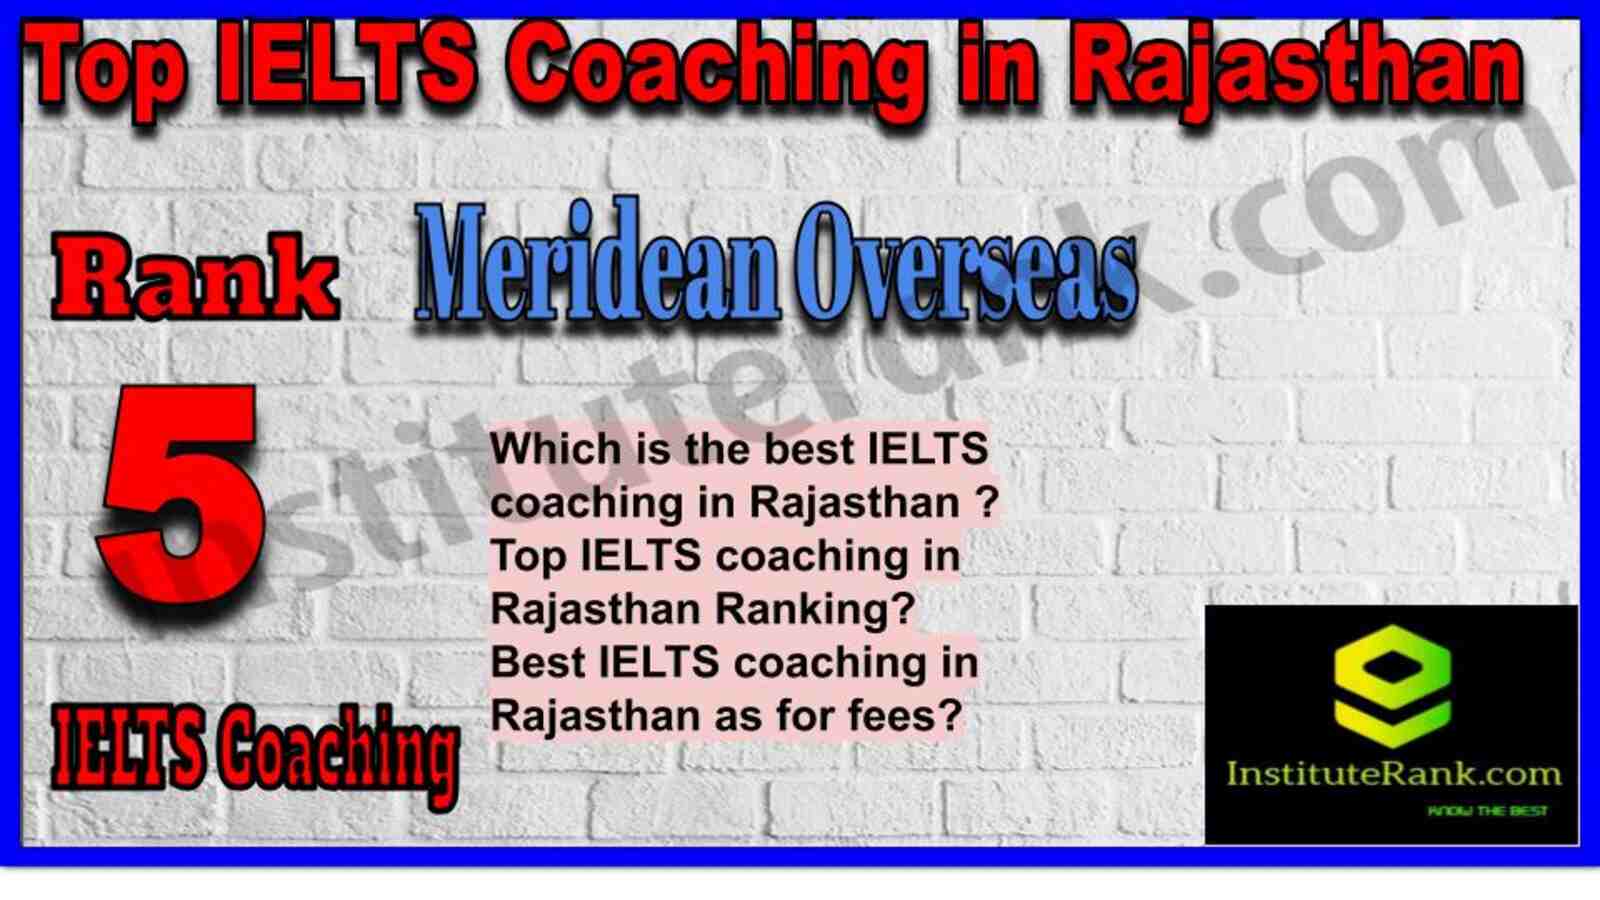 Rank 5. Meridean Overseas | Best IELTS Coaching in Rajasthan